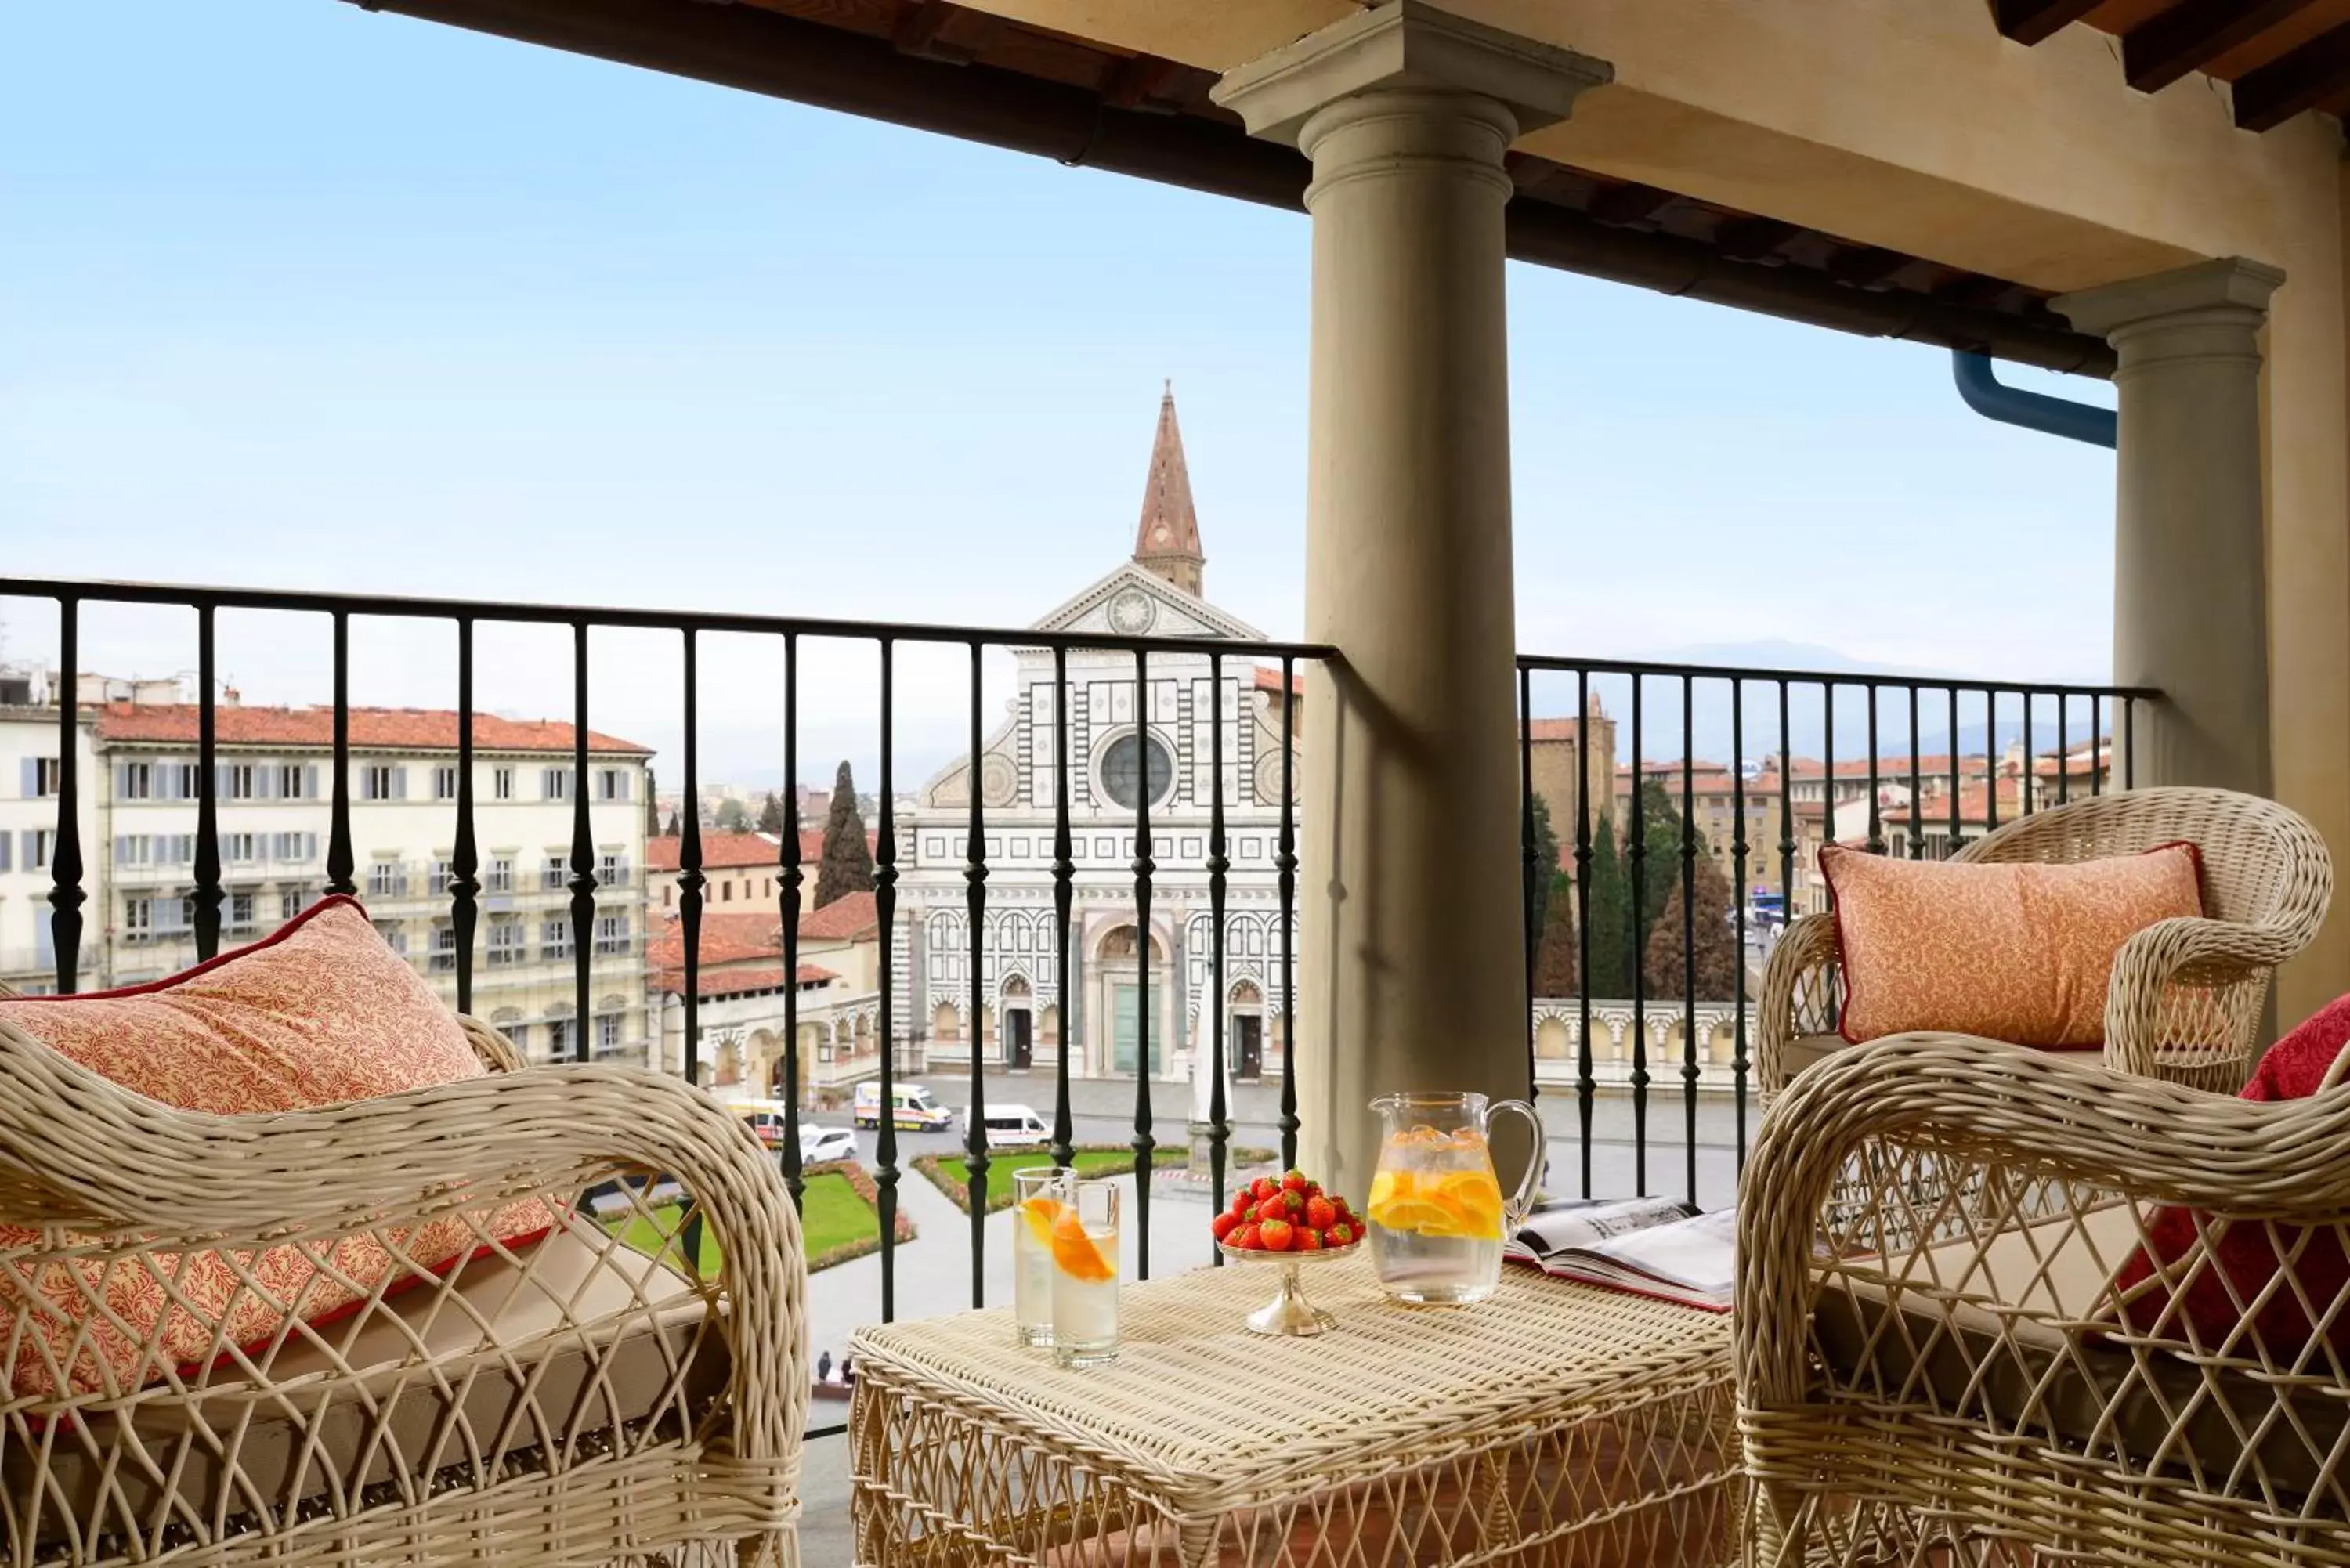 City view in Santa Maria Novella - WTB Hotels